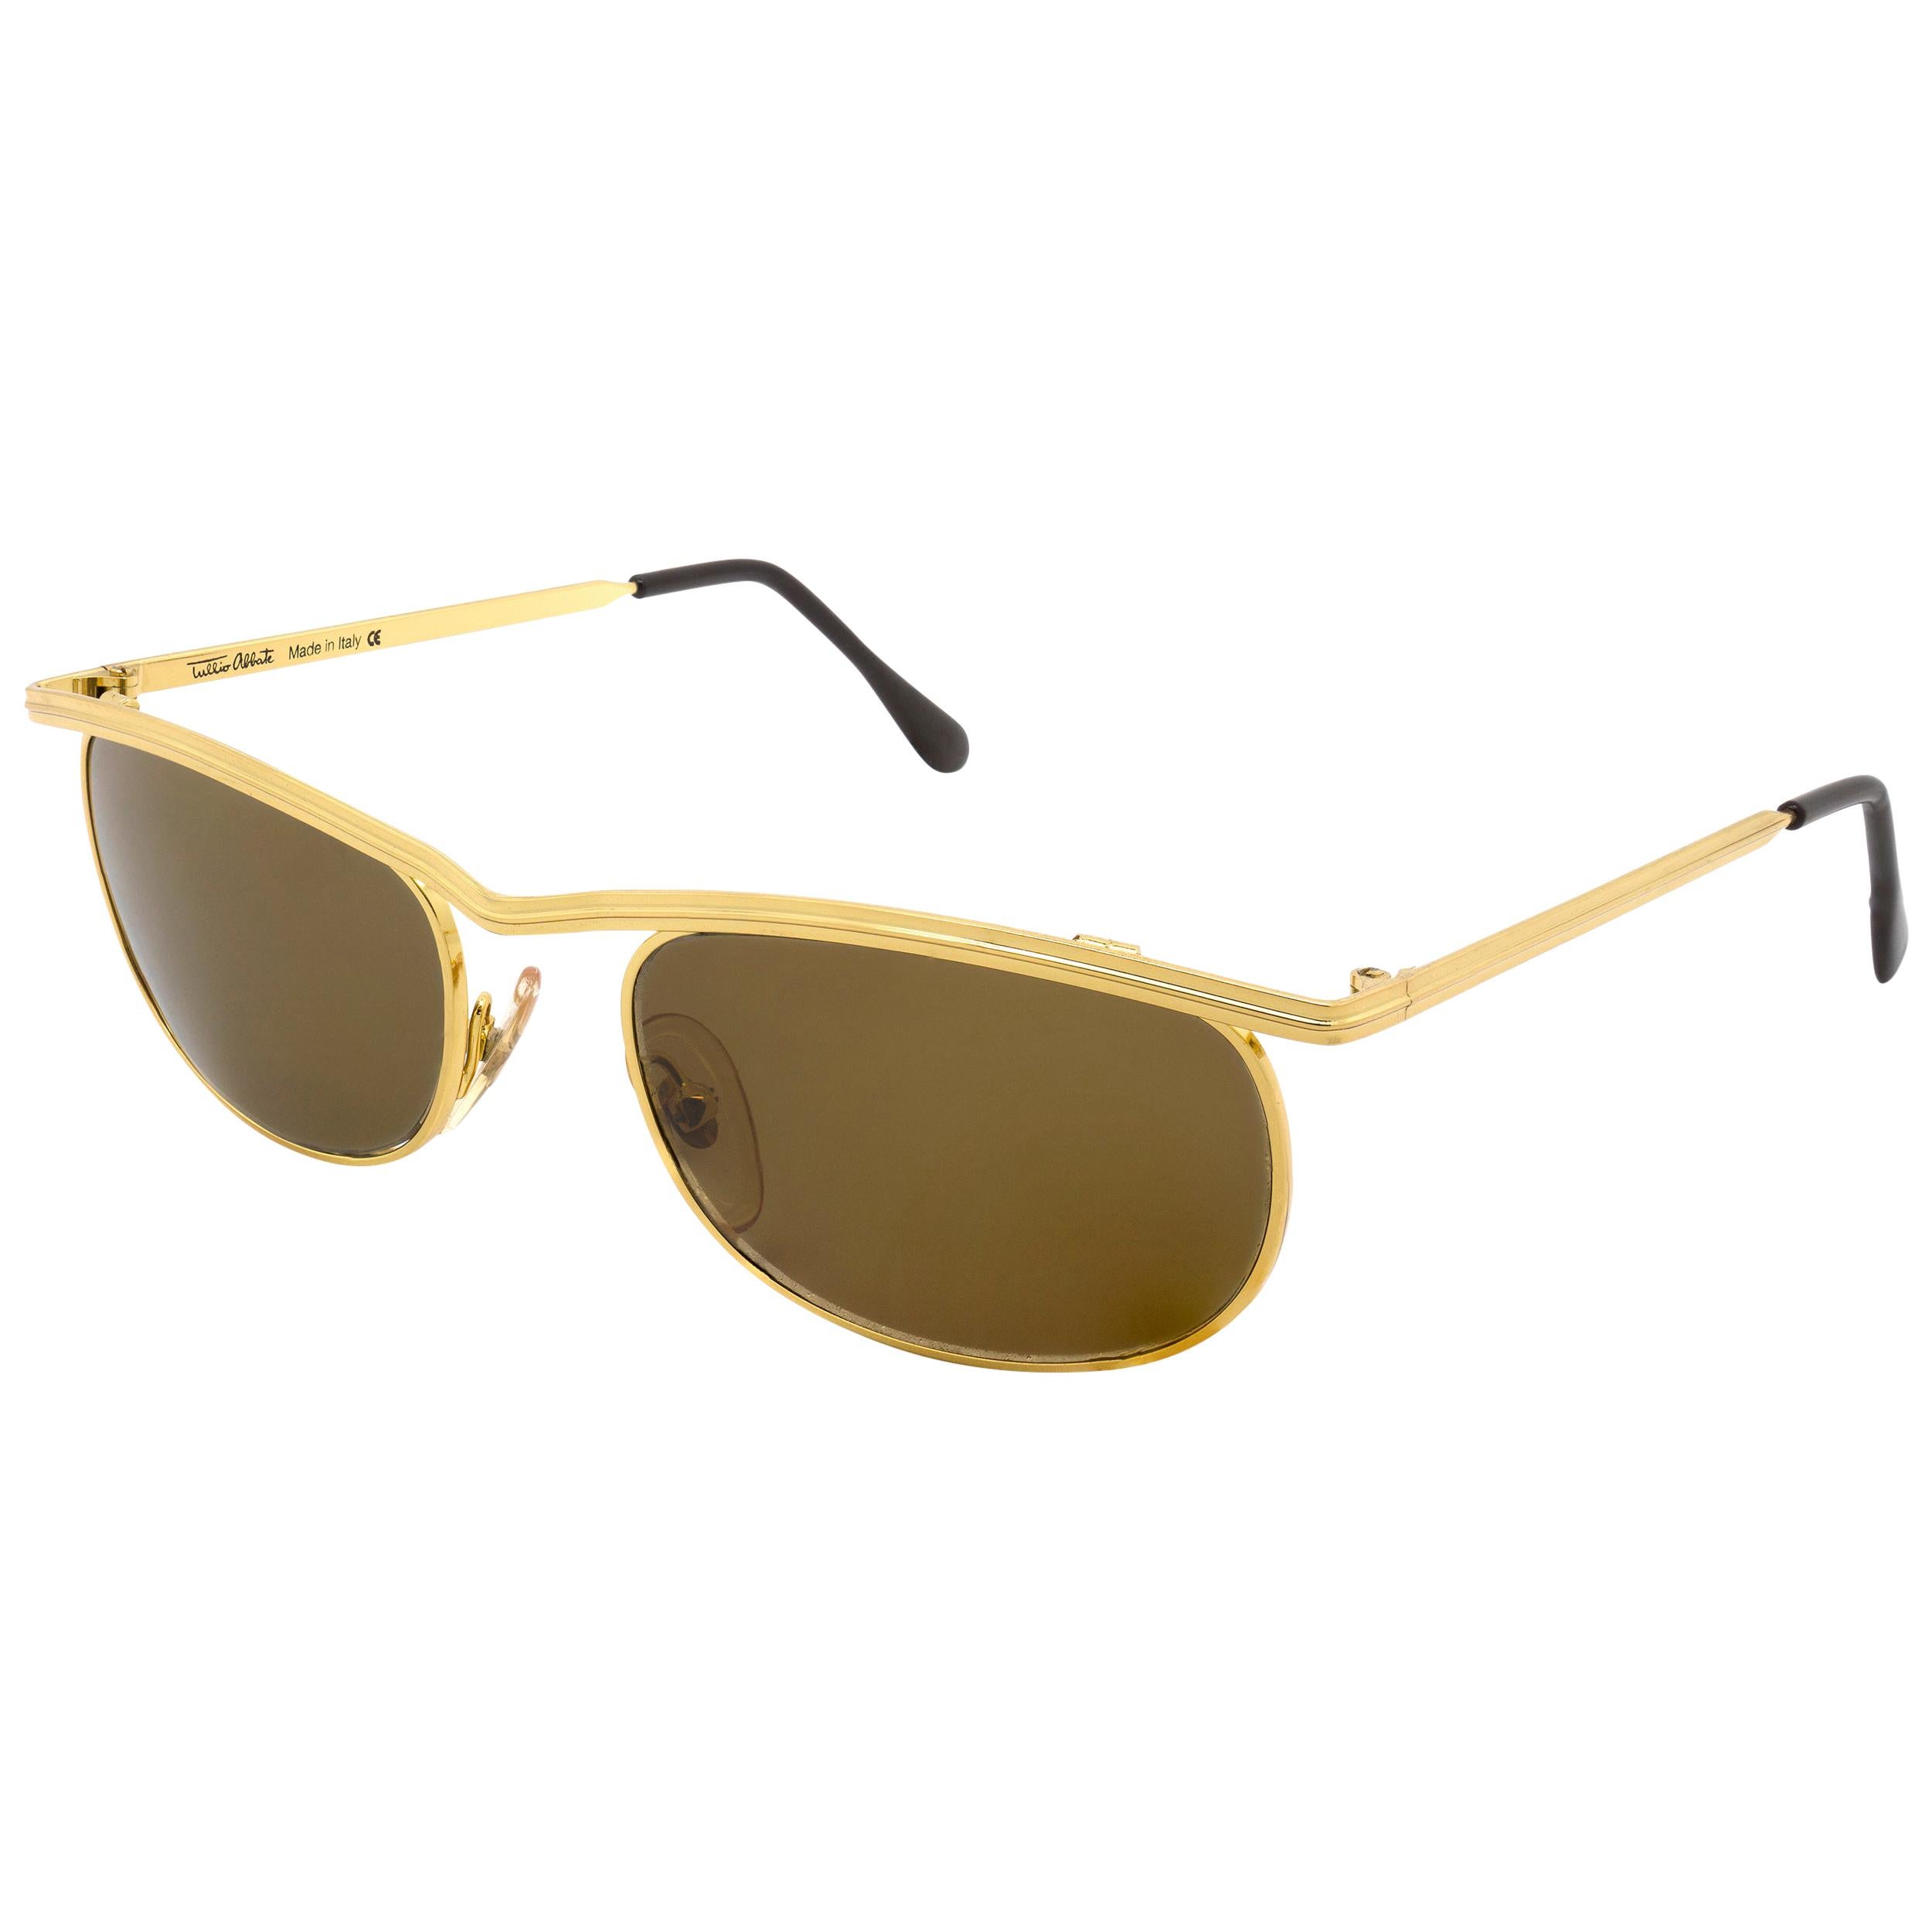 Tullio Abbate gold sunglasses 80s